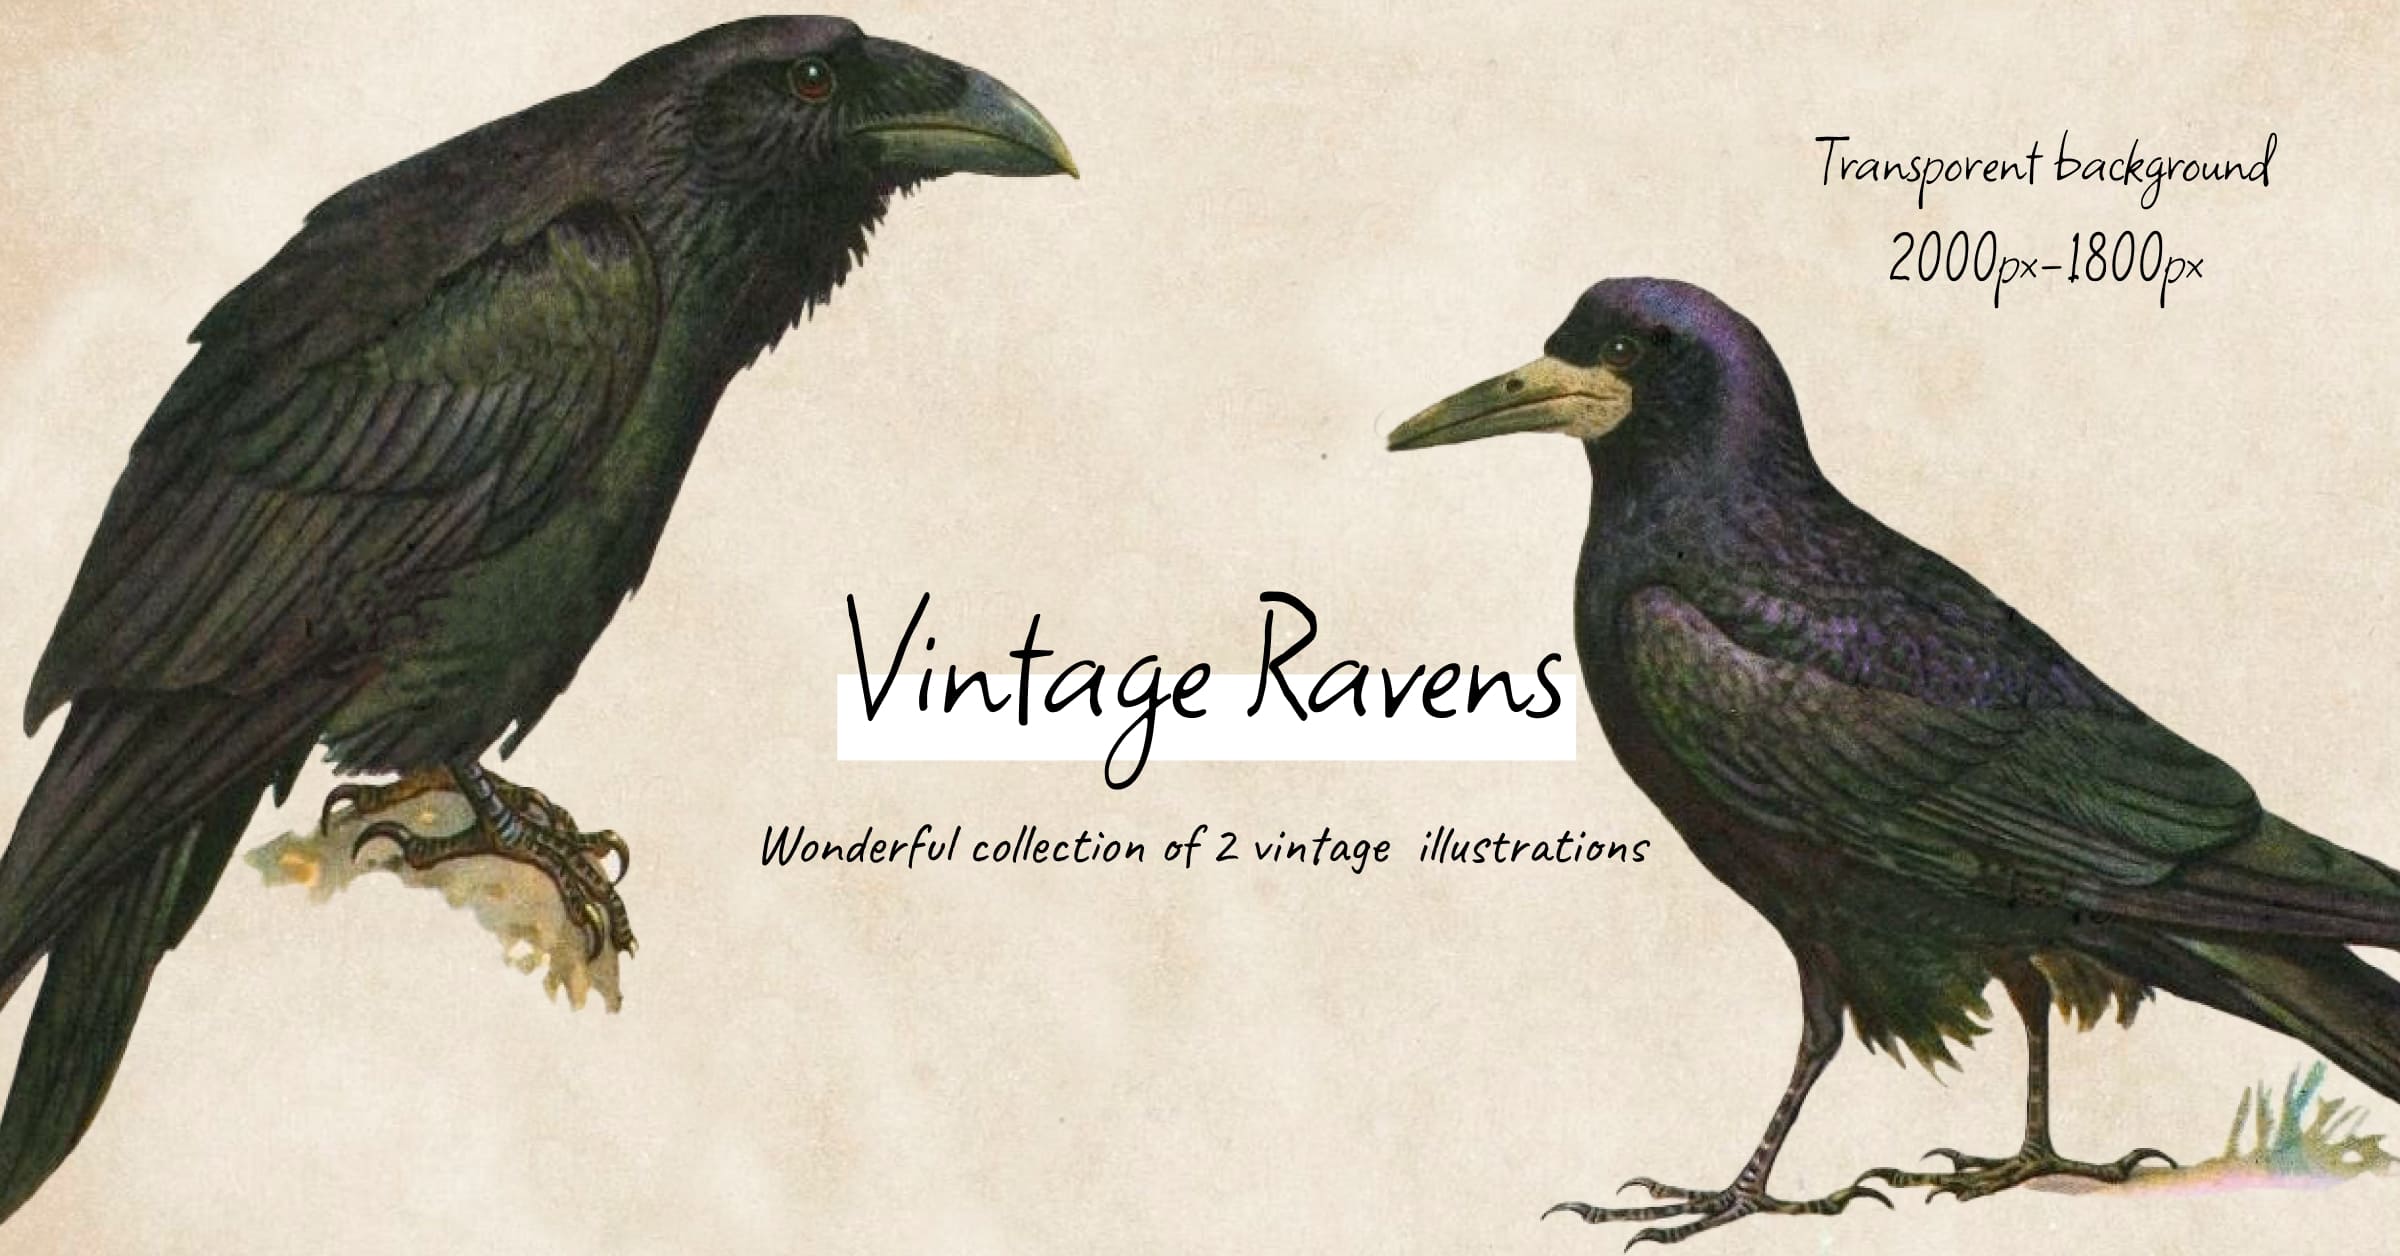 Vintage ravens illustrations - Facebook image preview.